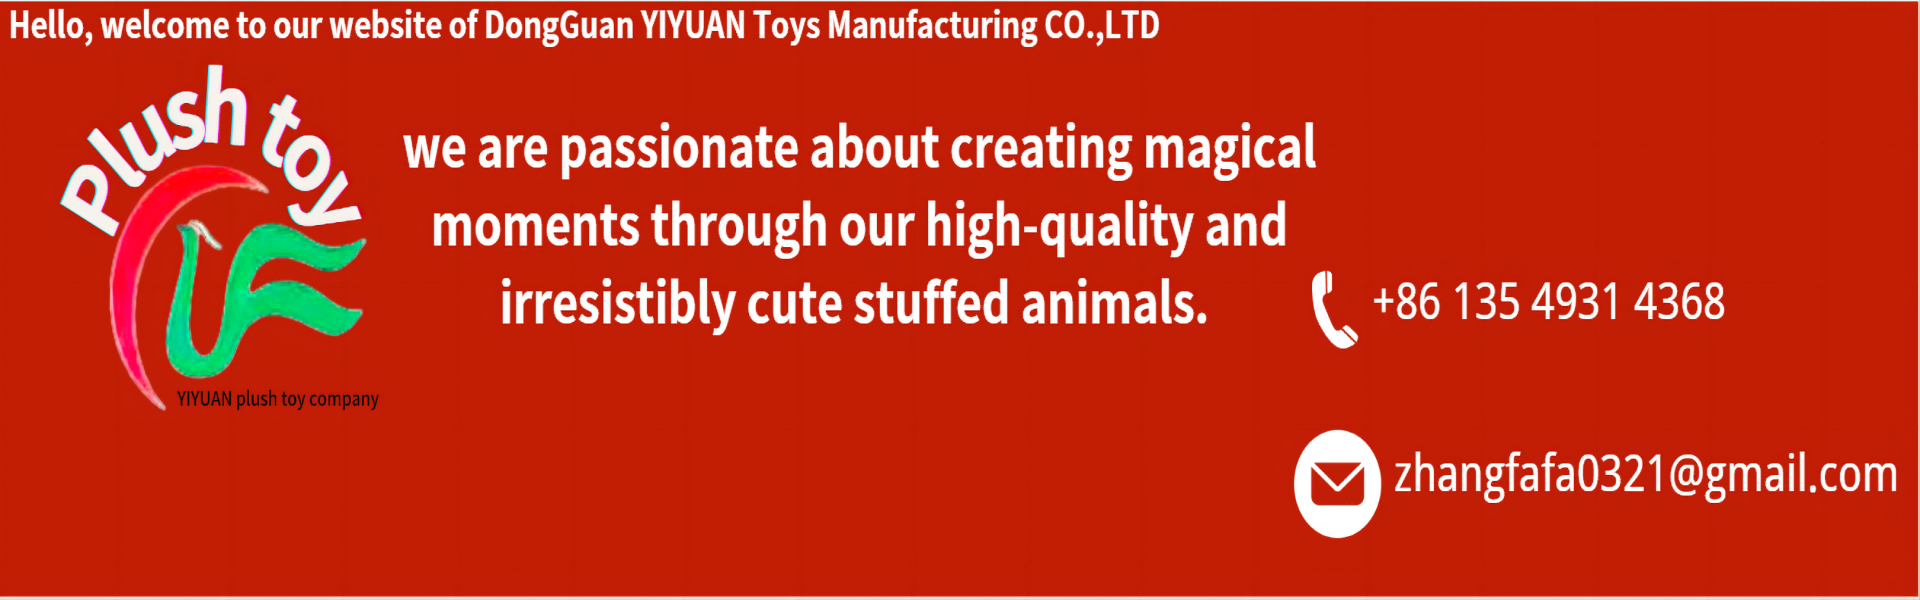 equipos de lujoso juguete, alta calidad y profesionales,yiyuan plush toy company